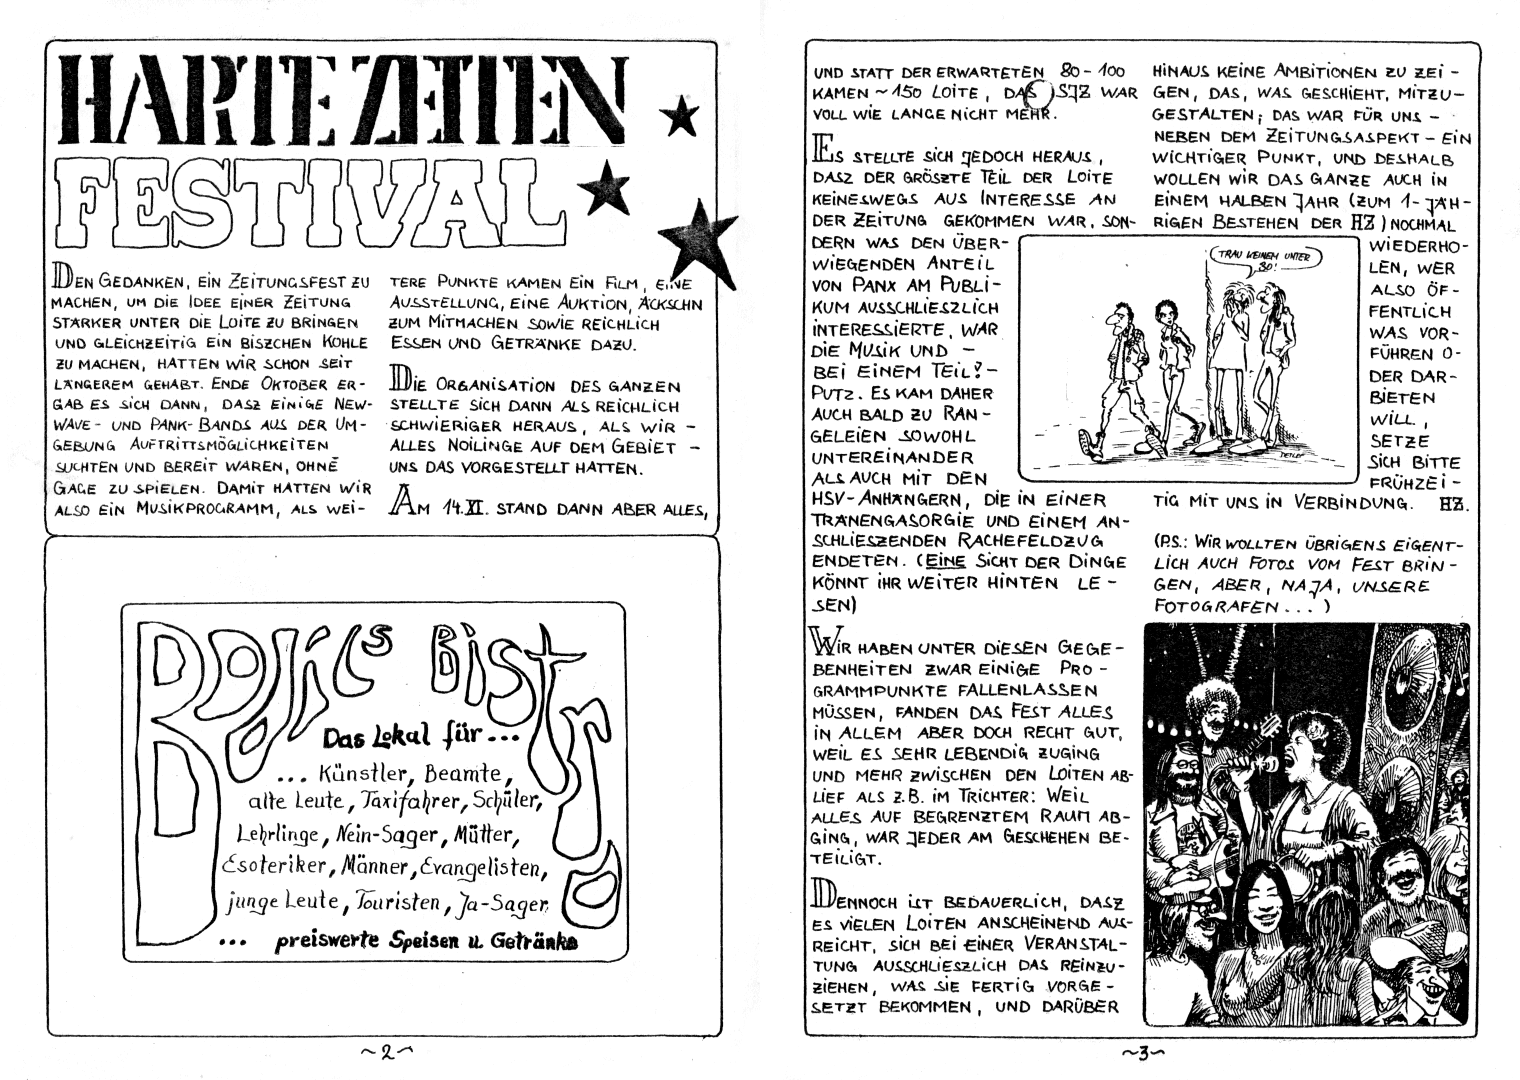 HZ 7 - Seite 2 und 3